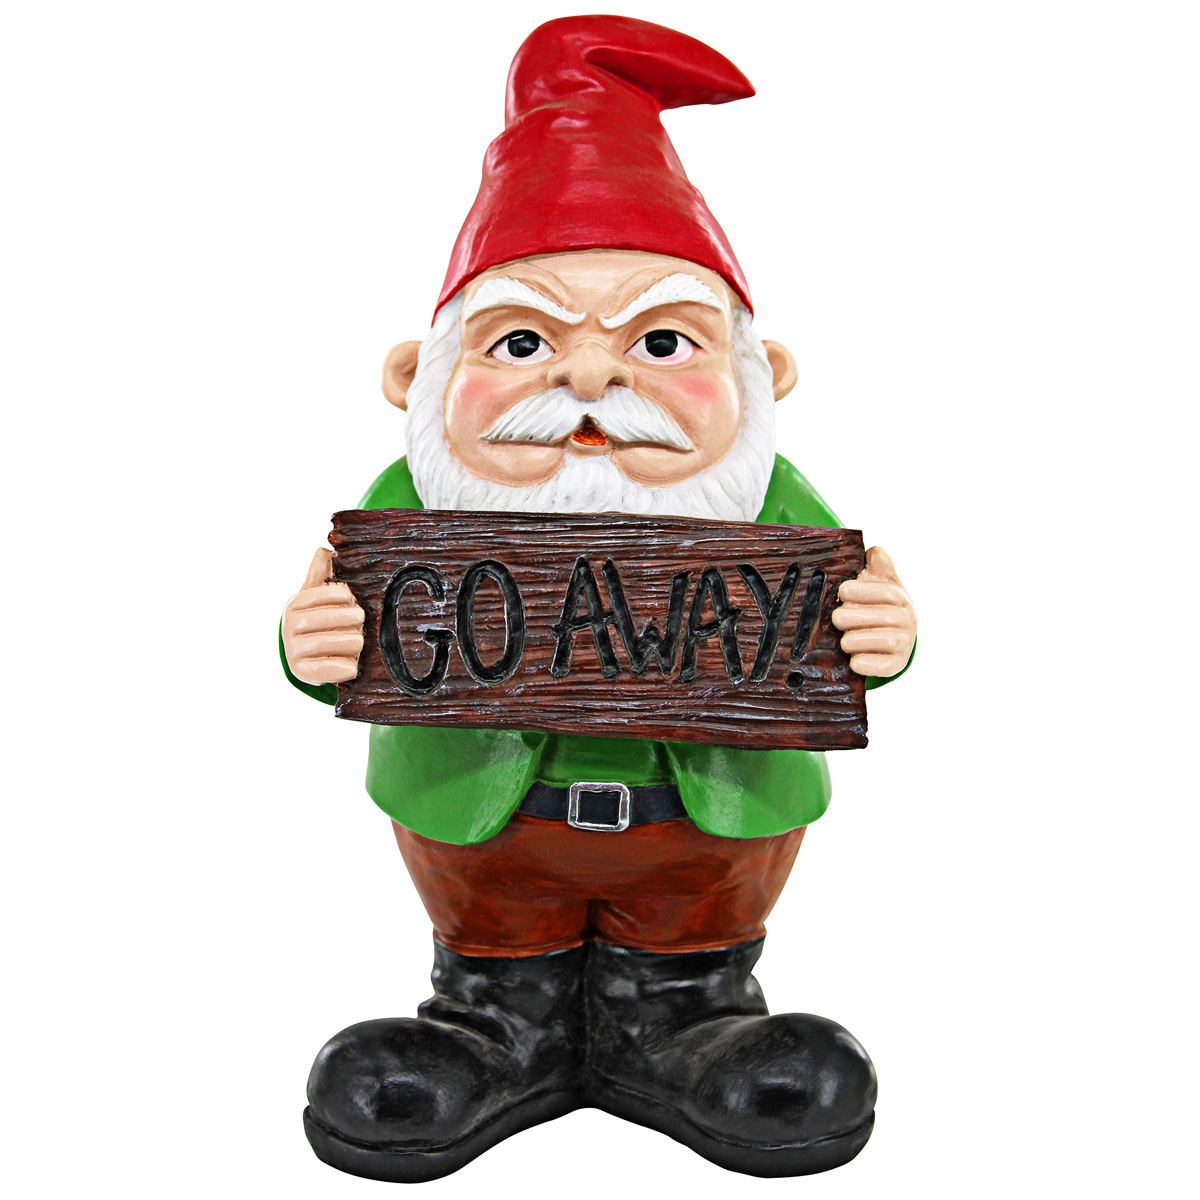 Picture 1 for Mr Bad Attitude "Go Away" Gnome Statue